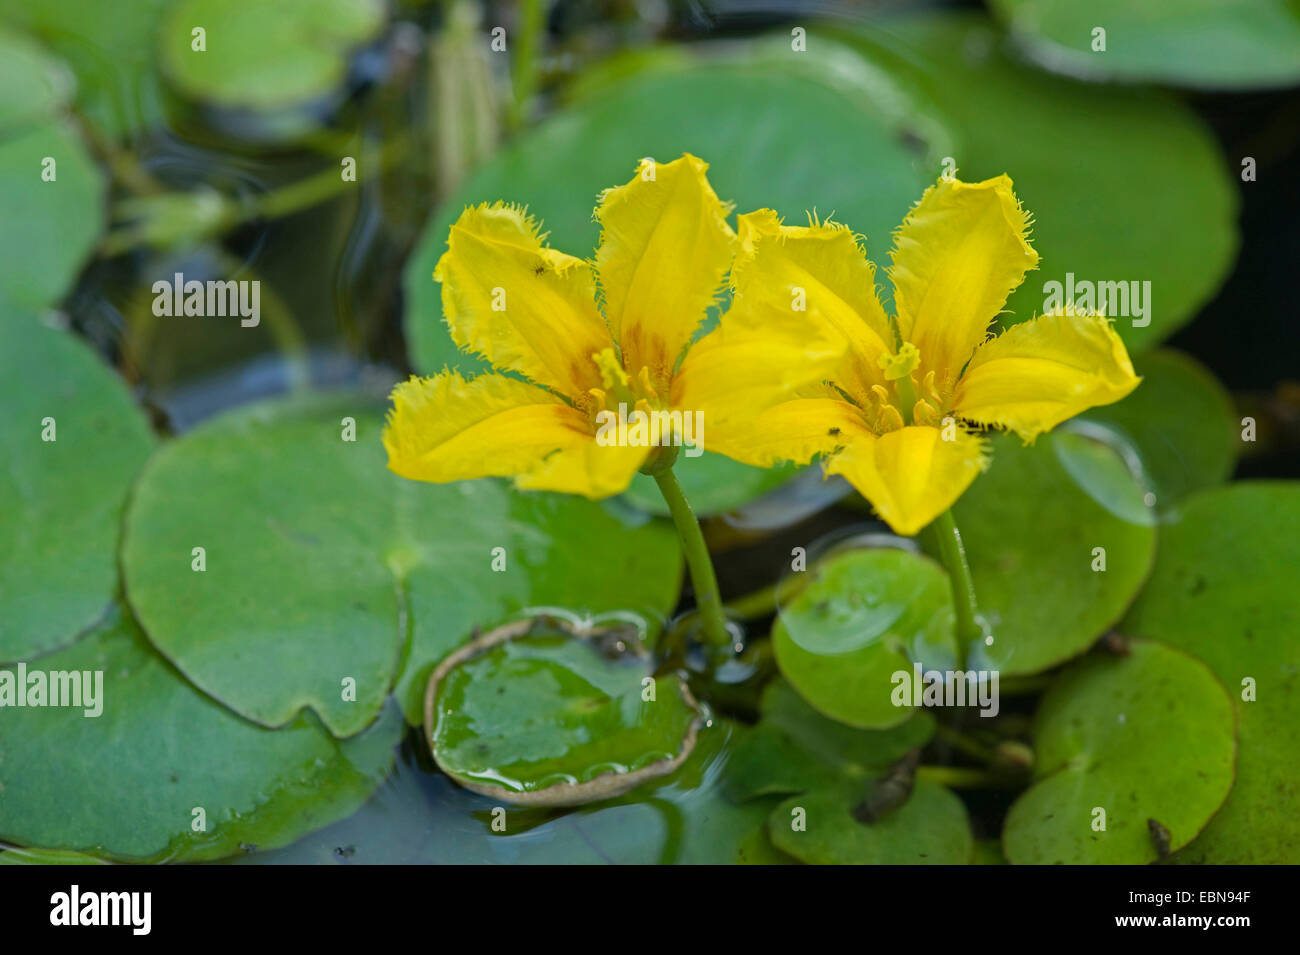 Coeur flottant jaune frangée, Water Lily (Nymphoides peltata), fleur, Allemagne Banque D'Images